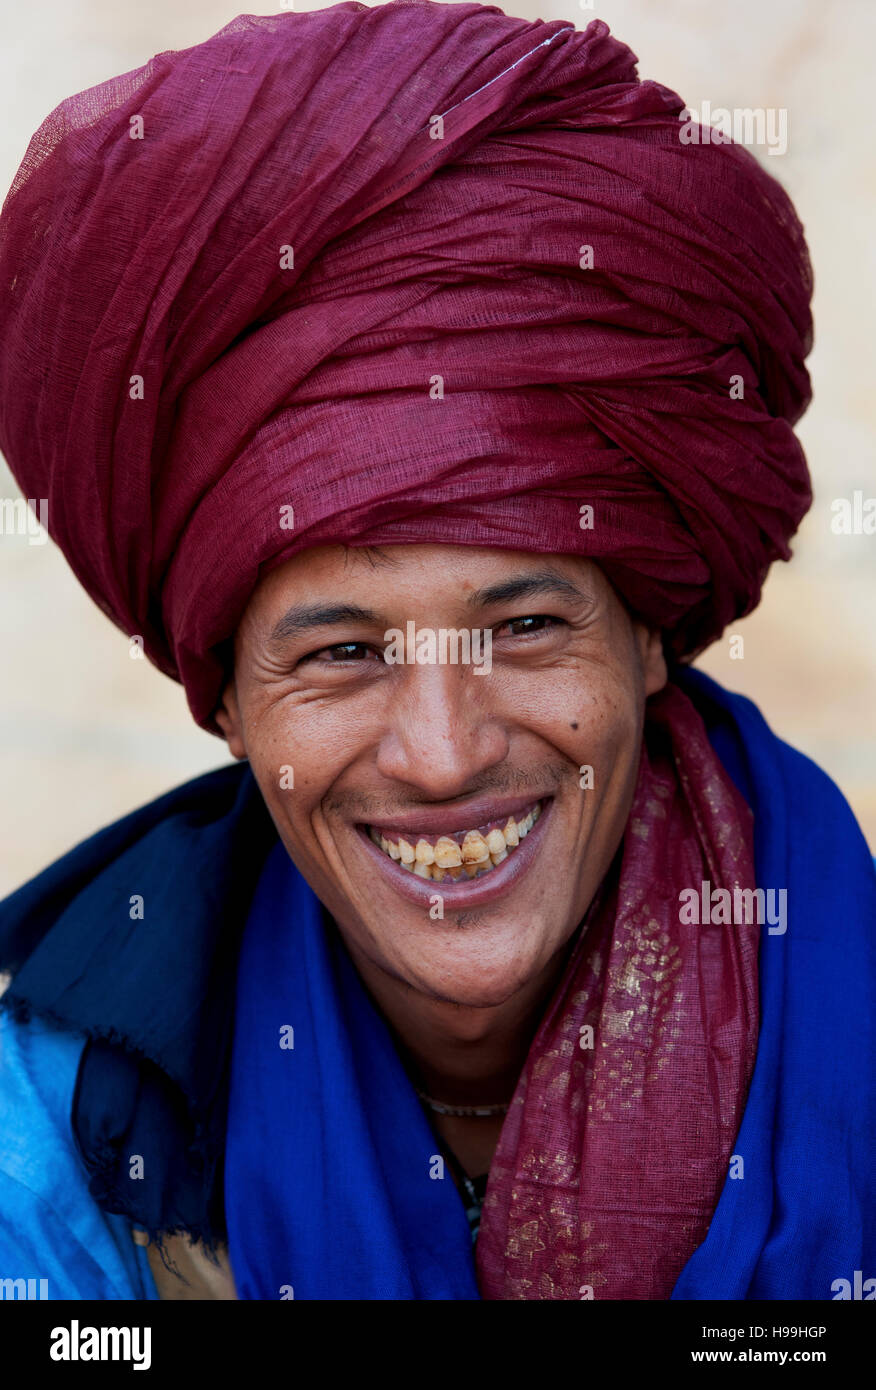 Portrait de nomade bédouine avec turban écarlate et un grand sourire de vendre ses marchandises en destination touristique populaire Ait Benhaddou, Maroc. Banque D'Images